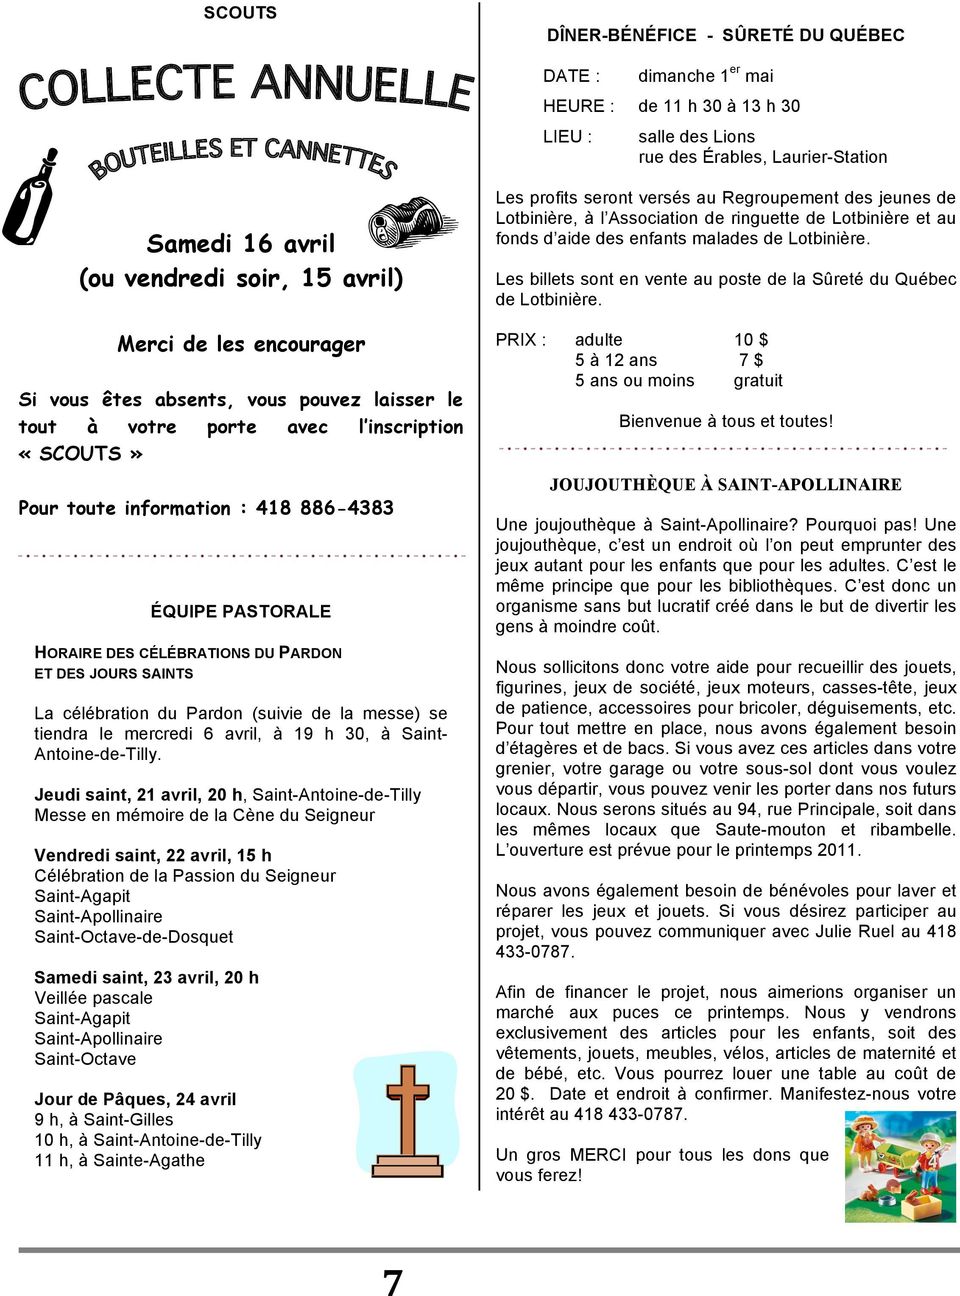 PARDON ET DES JOURS SAINTS La célébration du Pardon (suivie de la messe) se tiendra le mercredi 6 avril, à 19 h 30, à Saint- Antoine-de-Tilly.